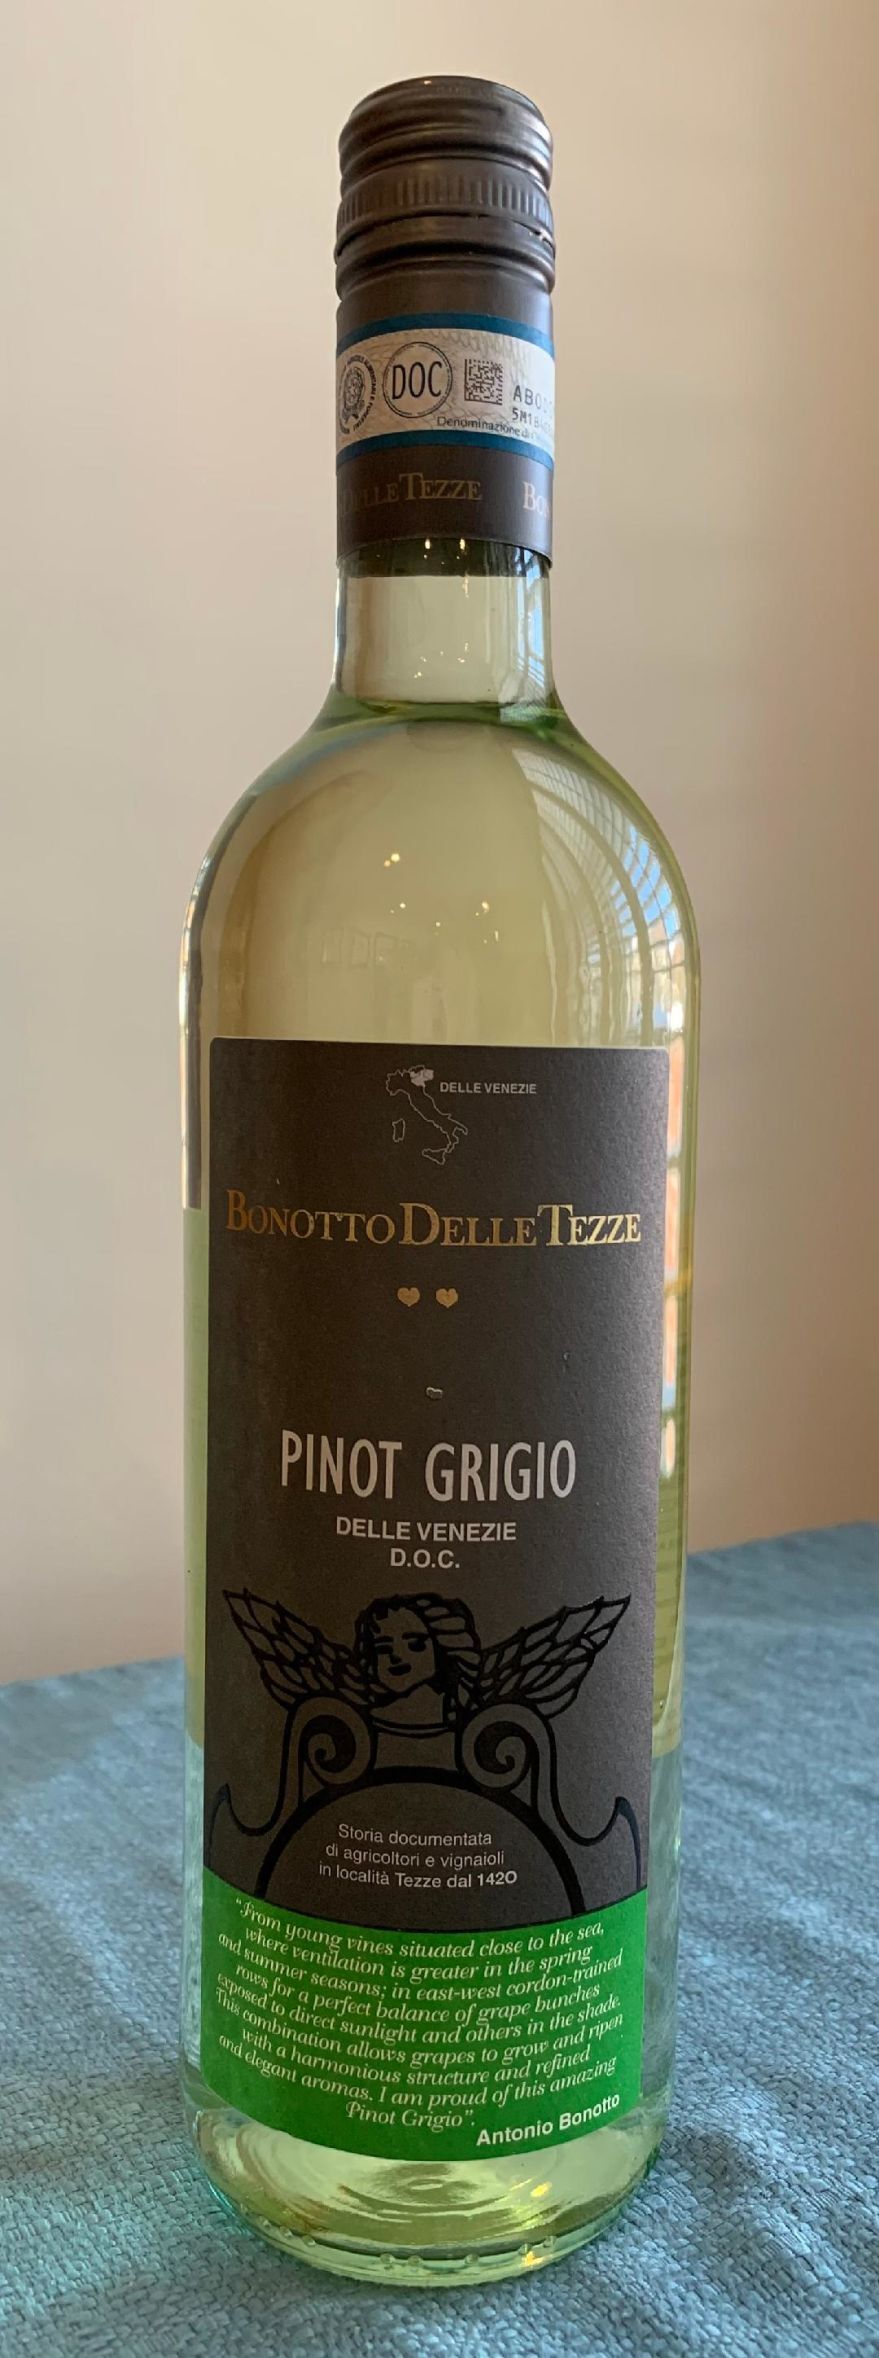 Bonotto Delle Tezze 2018 Pinot Grigio, Dili Venezia, Italia